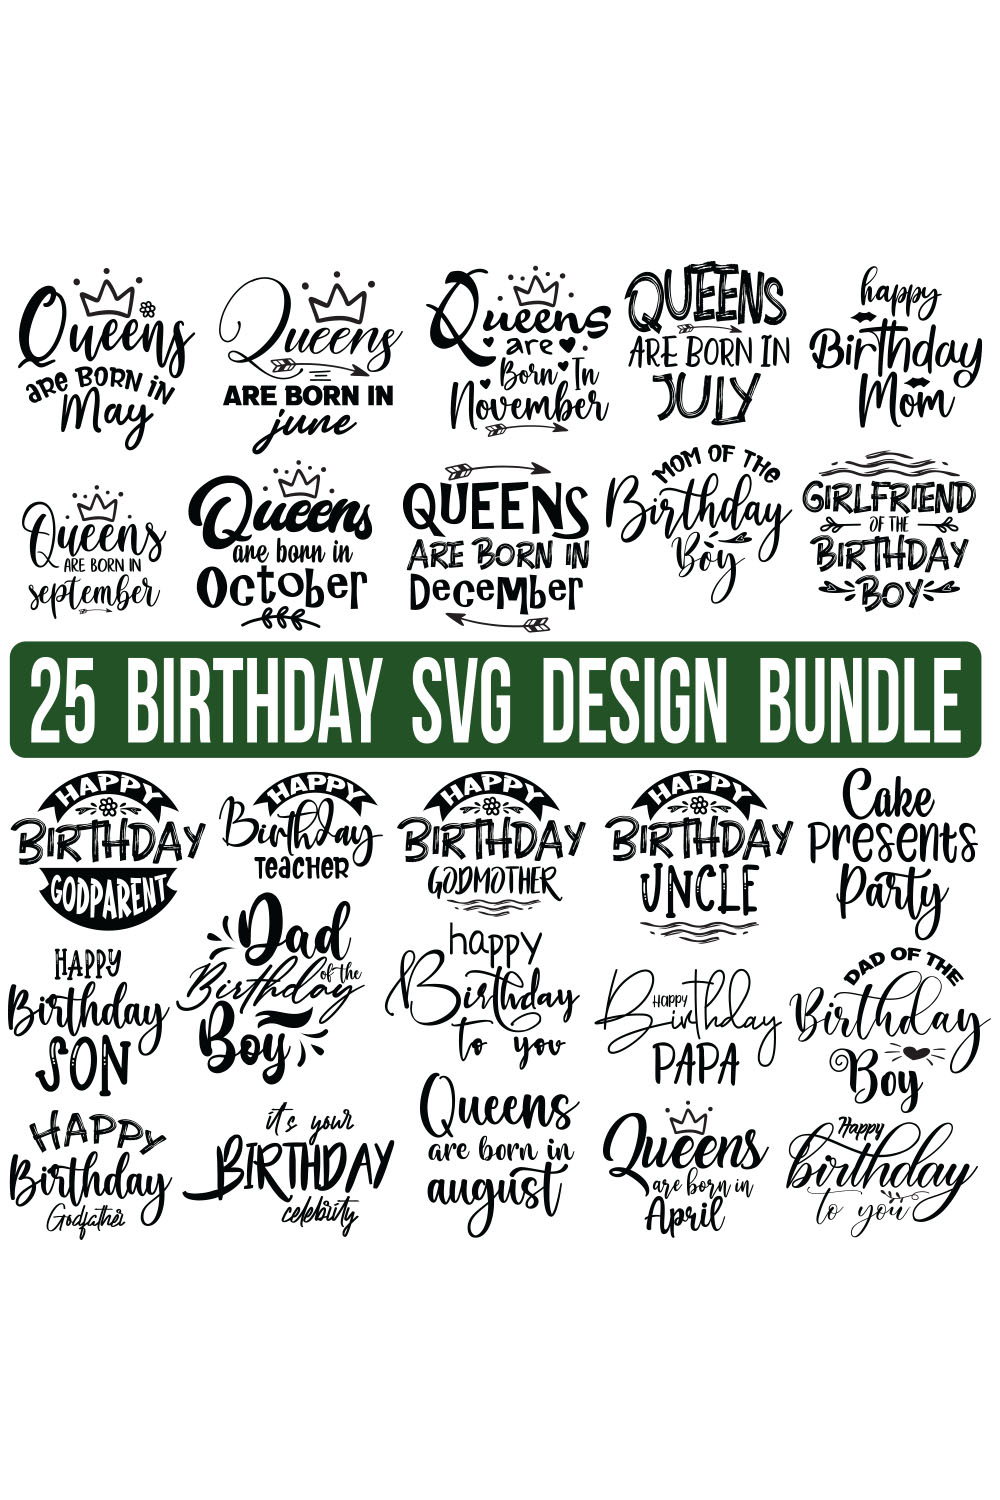 Birthday SVG Bundle, Birthday SVG, Birthday Girl svg, Birthday Shirt SVG, Gift for Birthday svg, Wishes for Birthday,Birthday Funny Quotes, Happy Birthday Svg, Birthday Bundle, pinterest preview image.